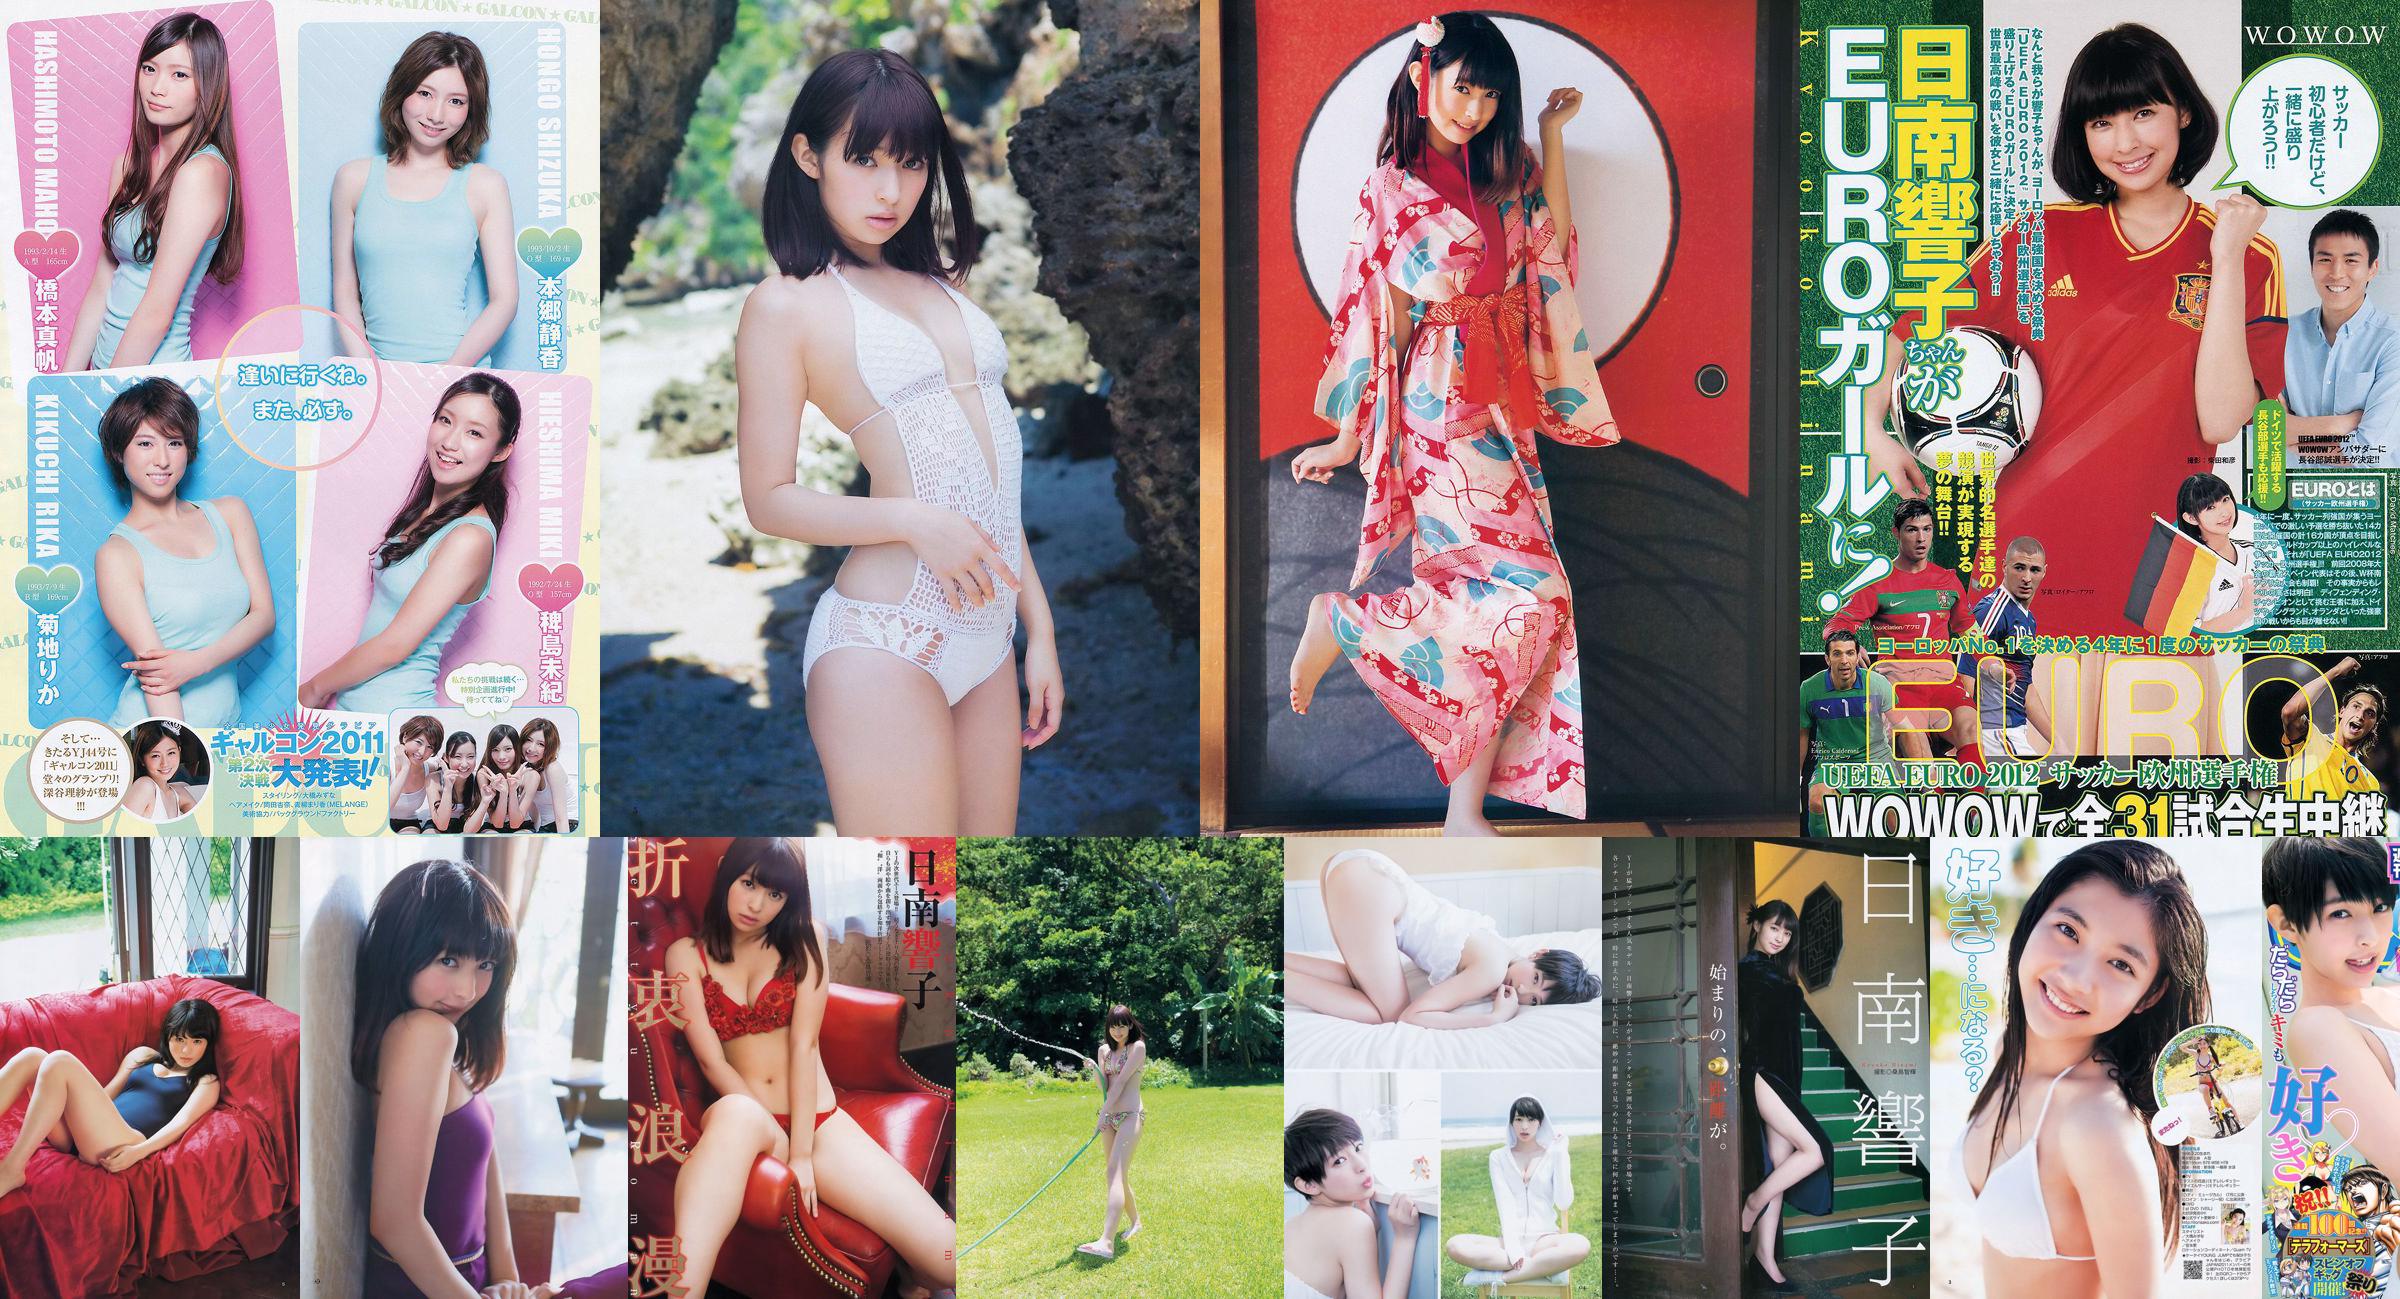 Nichinan Kyouko Nito Misaki [Weekly Young Jump] Tạp chí ảnh số 08 năm 2012 No.c214d7 Trang 1